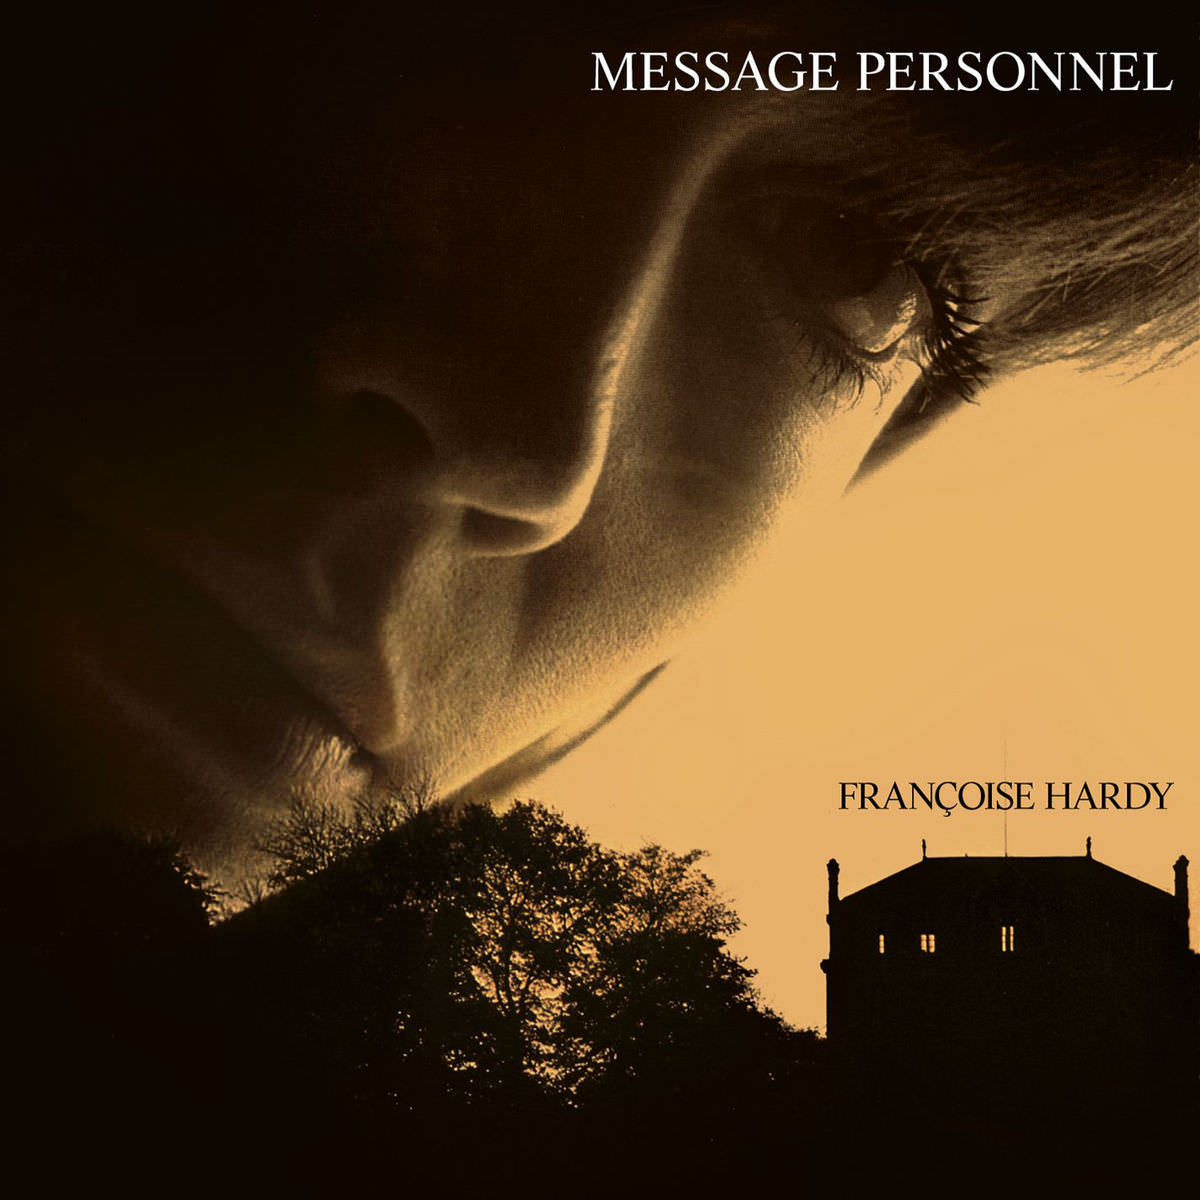 Francoise Hardy - Message personnel (1973/2013) [FLAC 24bit/96kHz]